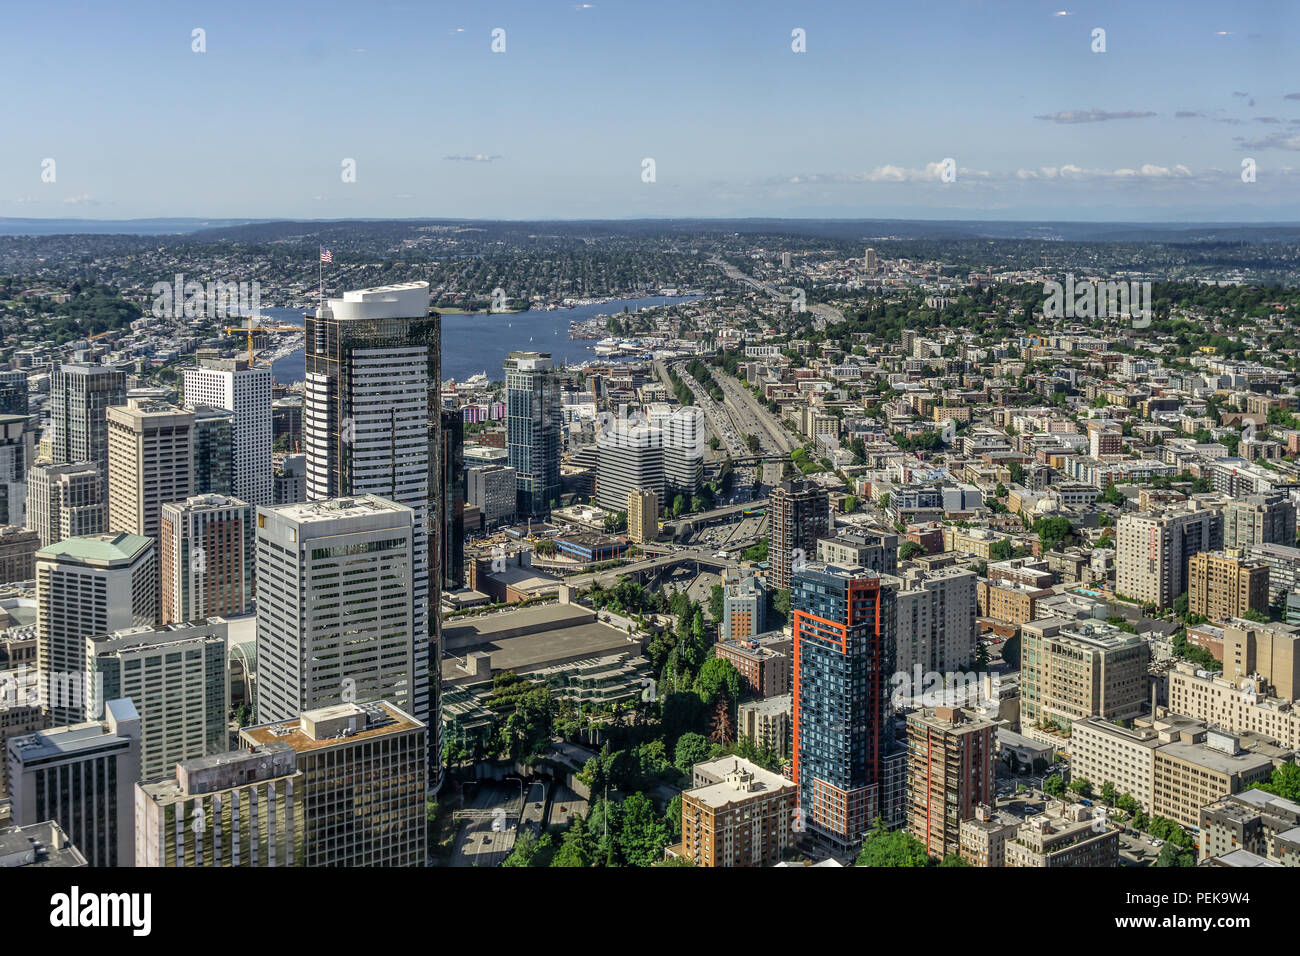 Vue aérienne ou donnent sur le centre-ville de Seattle, la colline du Capitole et le lac Union dans la distance, l'état de Washington, USA. Banque D'Images